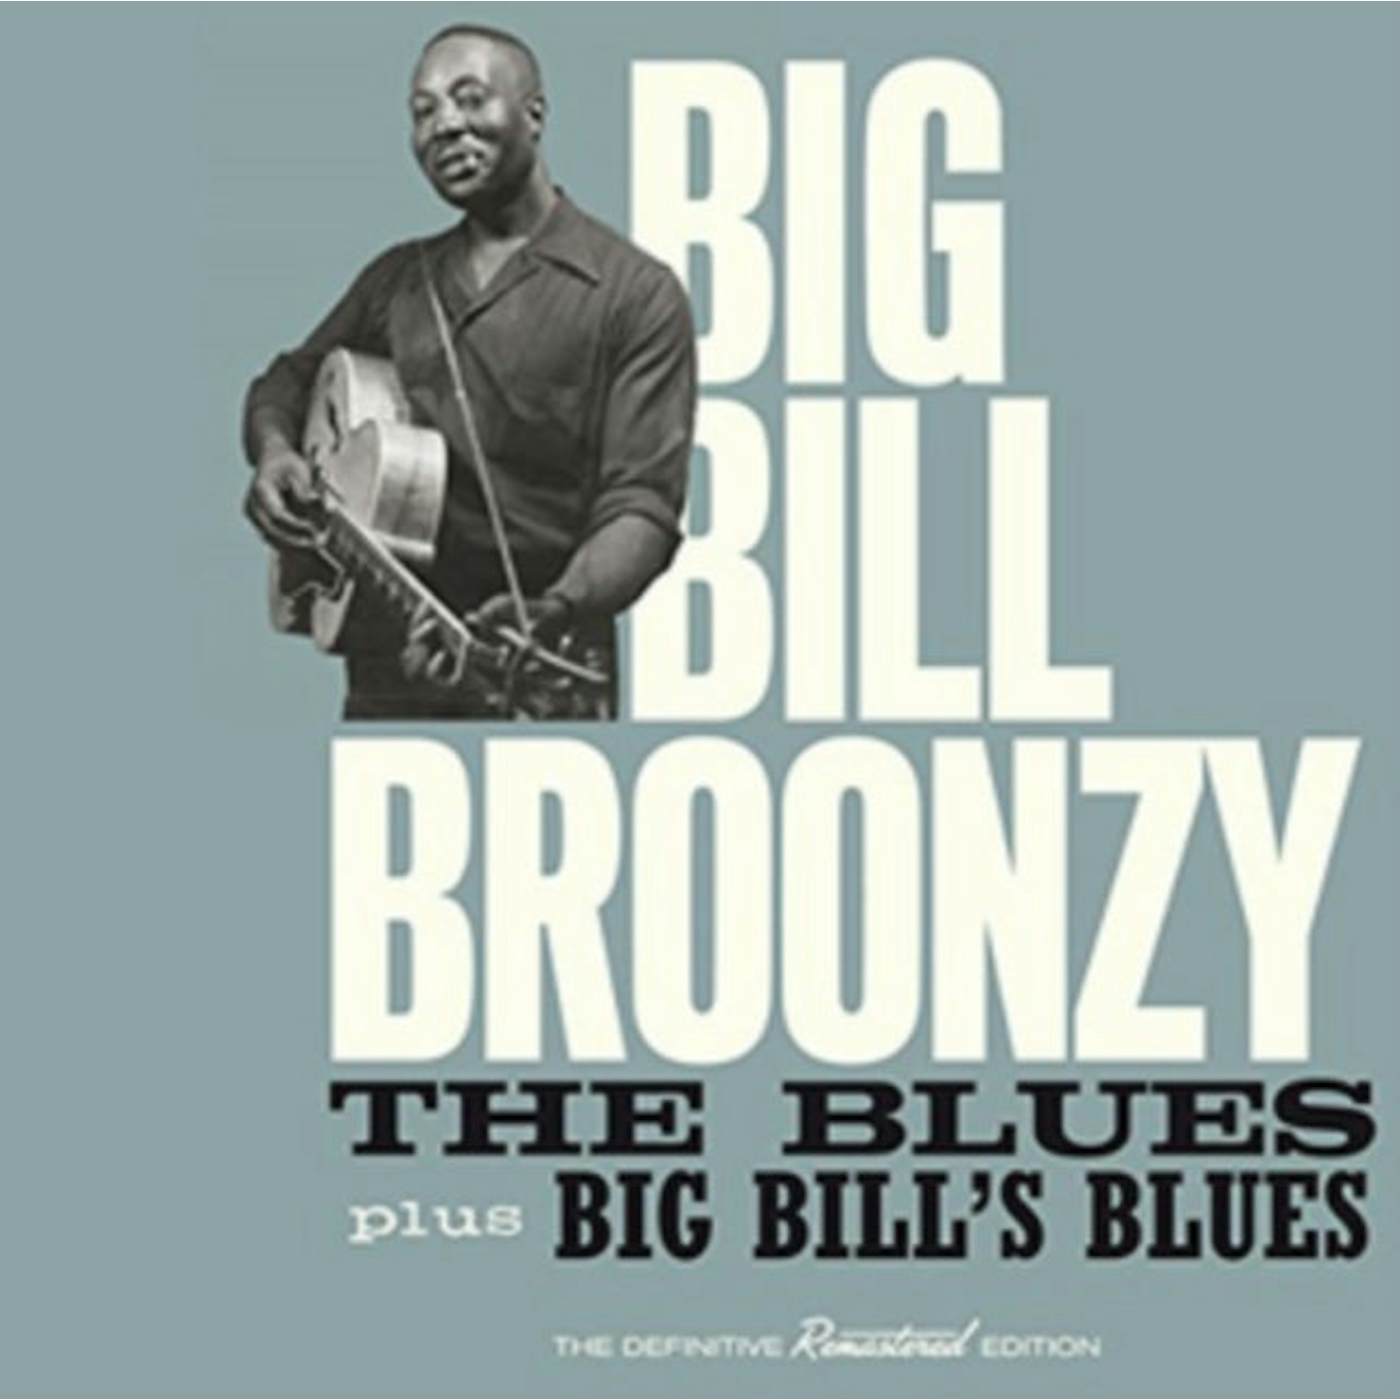 Big Bill Broonzy CD - The Blues / Big Bill's Blues